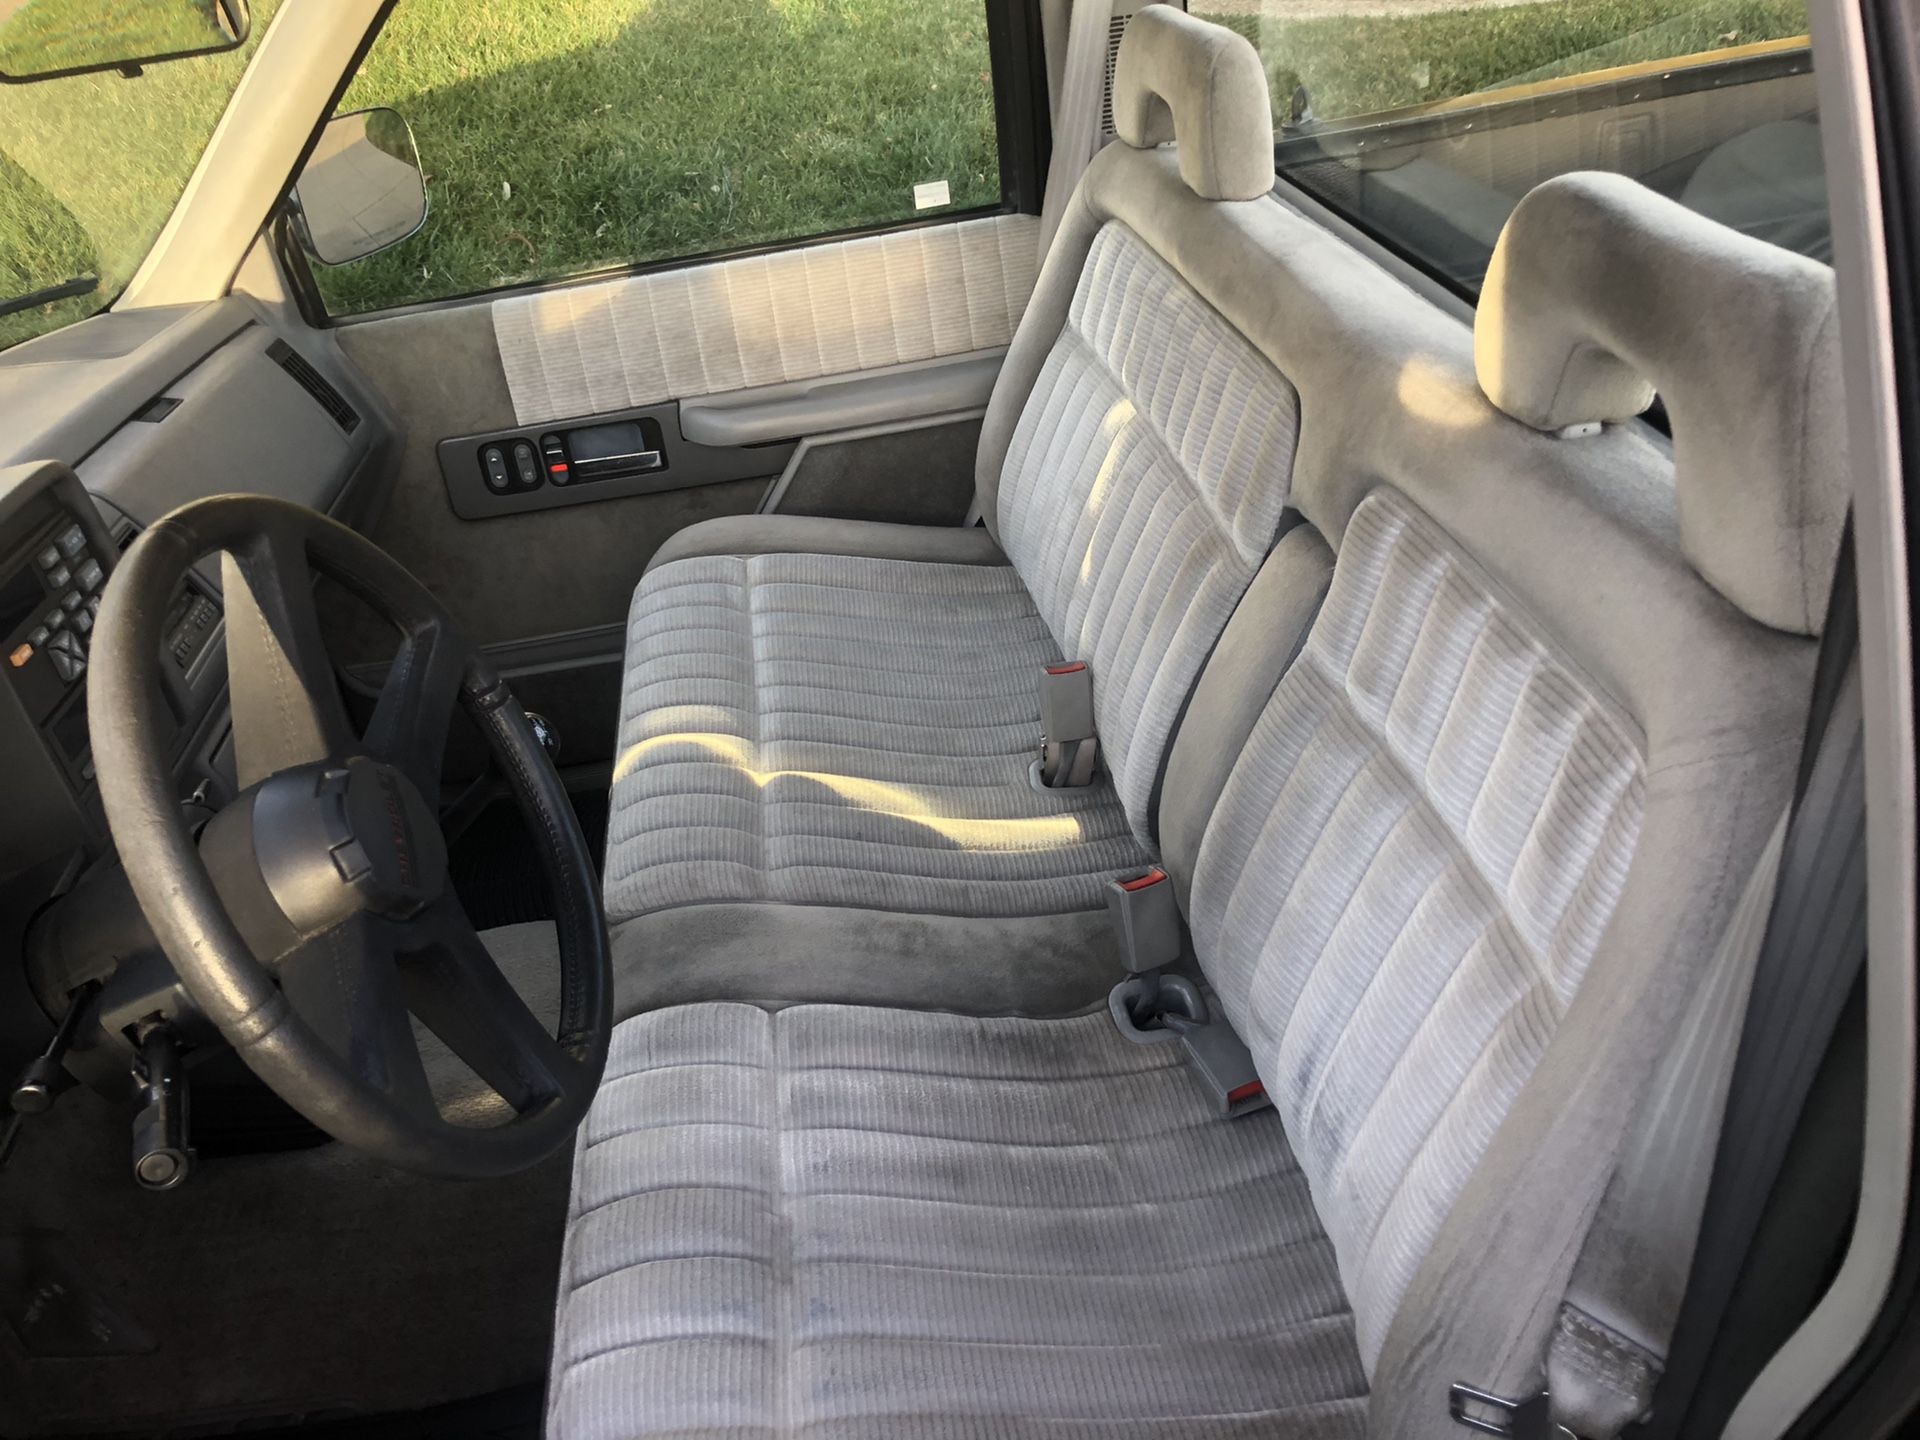 1993 Chevy Silverado Single Cab 5.7L V8.